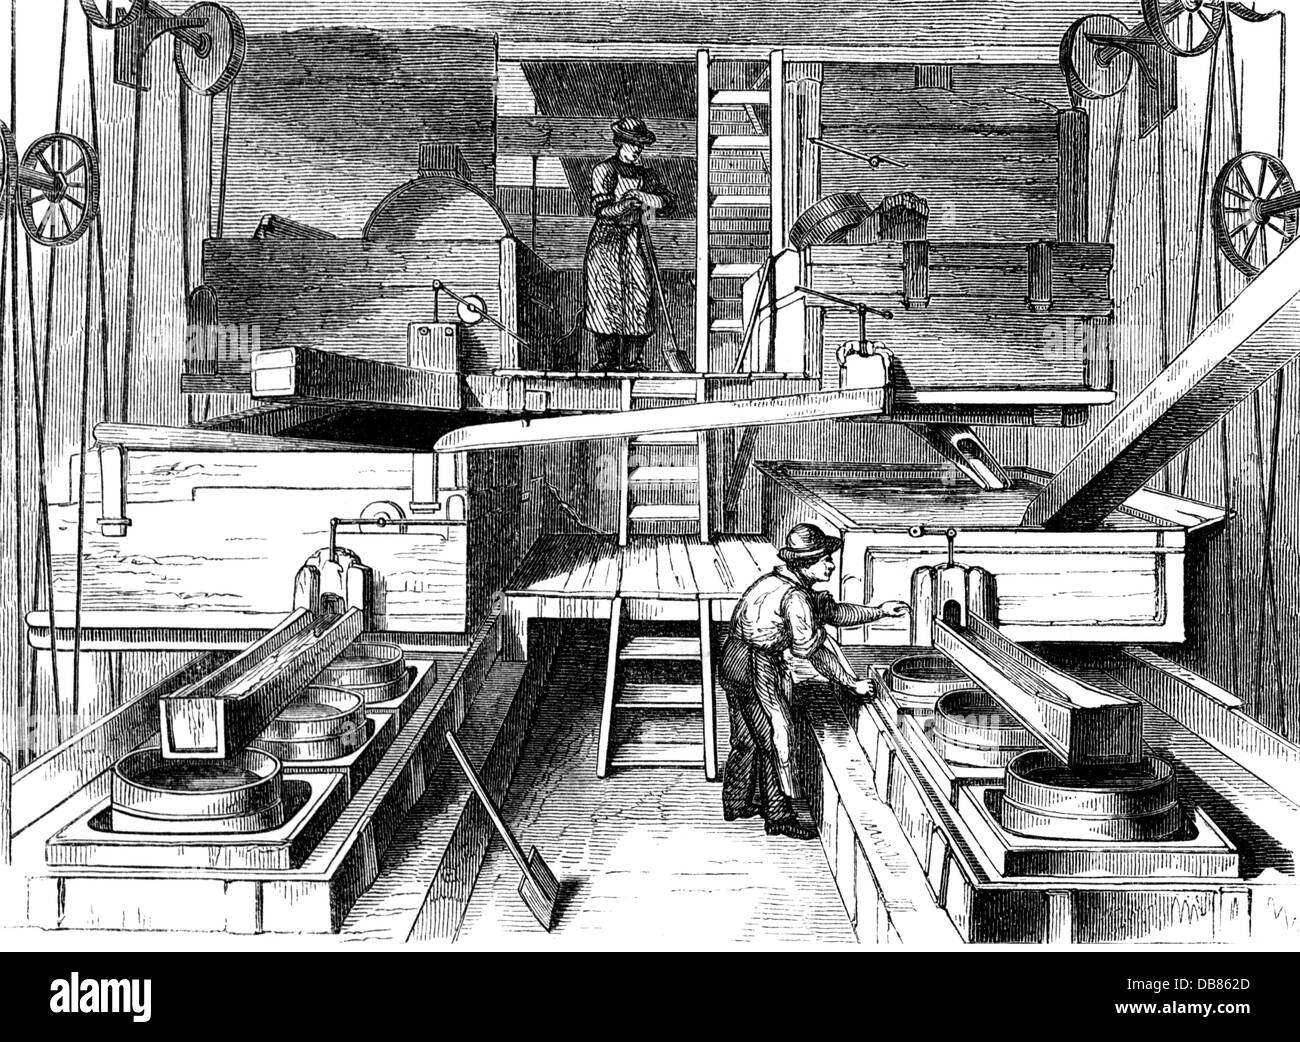 Industrie, céramique, porcelaine, machine d'élutriation de l'usine de porcelaine Meissen, gravure de bois, vers 1865, droits additionnels-Clearences-non disponible Banque D'Images